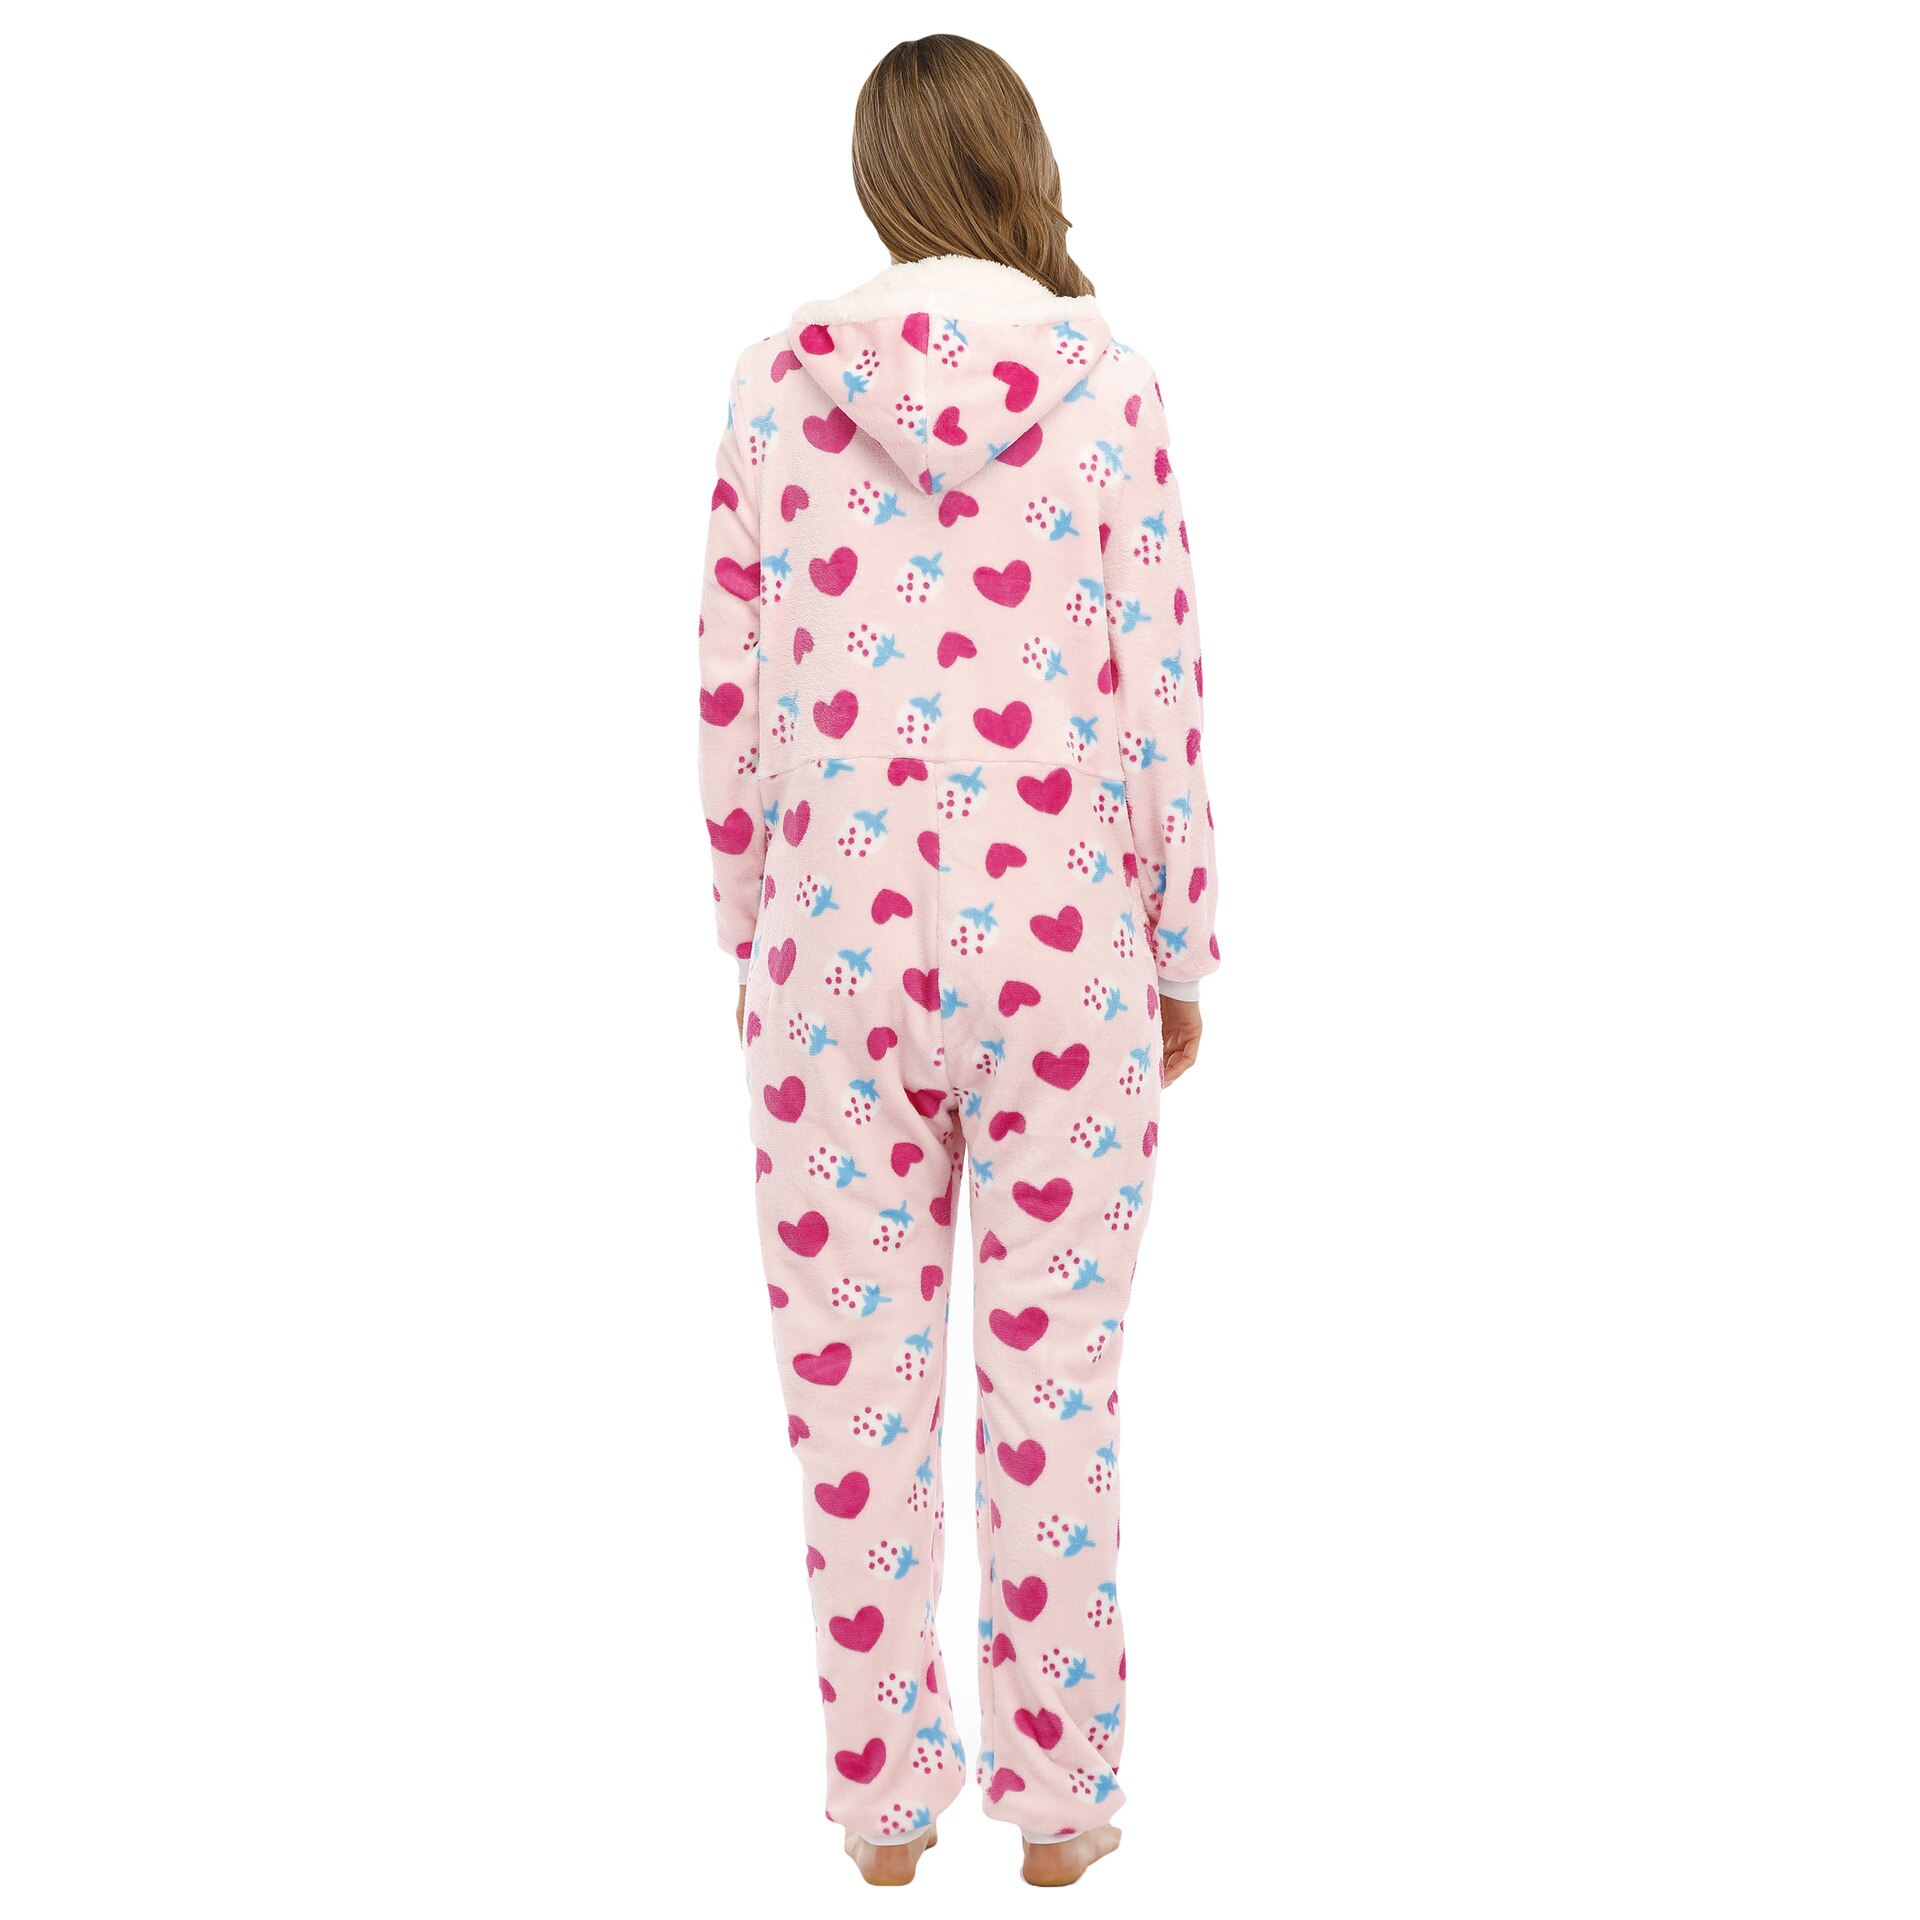 Flannel Jumpsuit Sleepwear Adult Women Winter Warm Pyjamas Red Heart Print Solid Onesies Plus Large Long Sleeve Hood Rompers Set